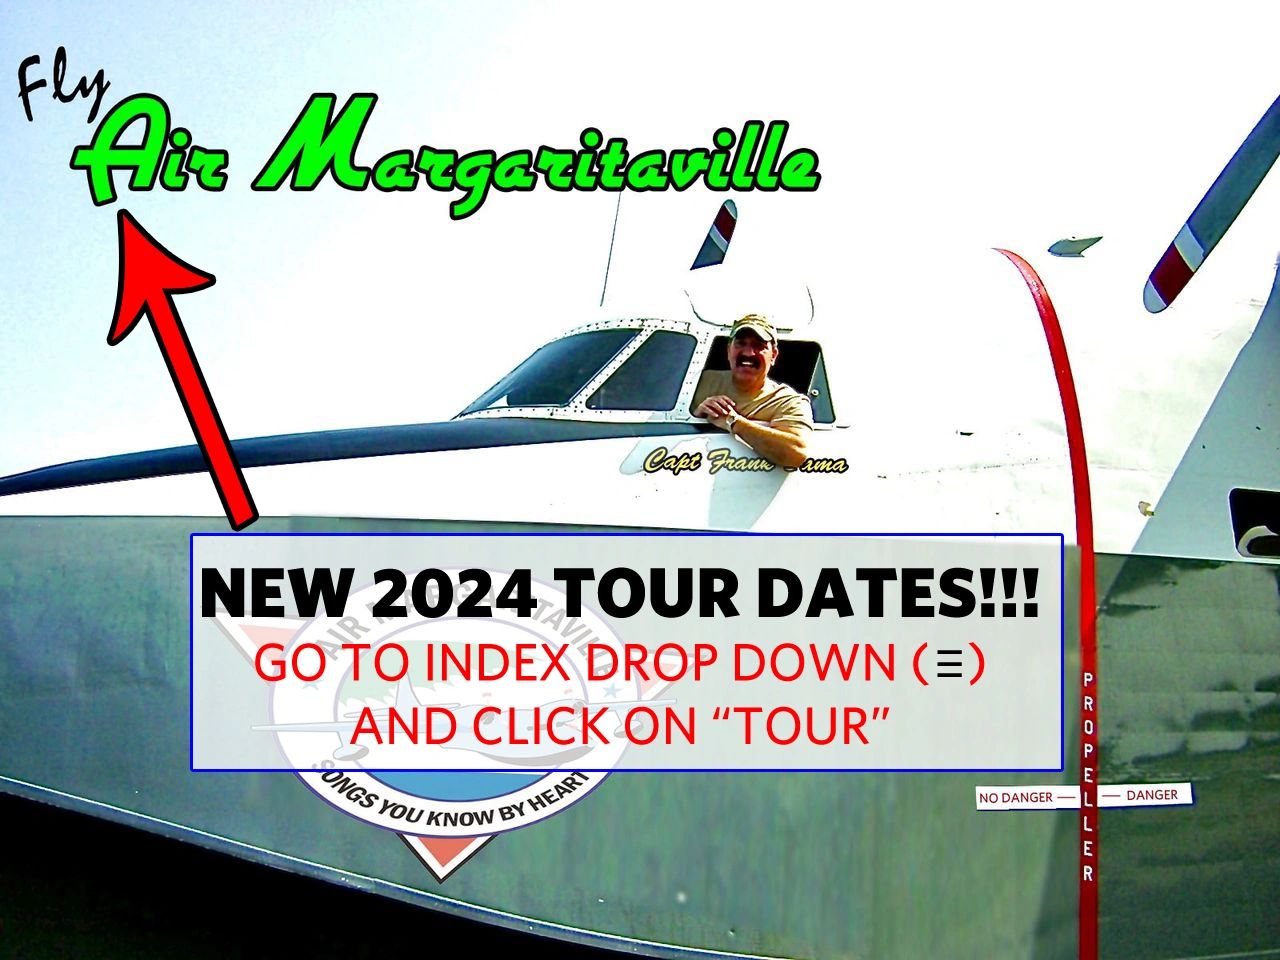 margaritaville.com tour dates